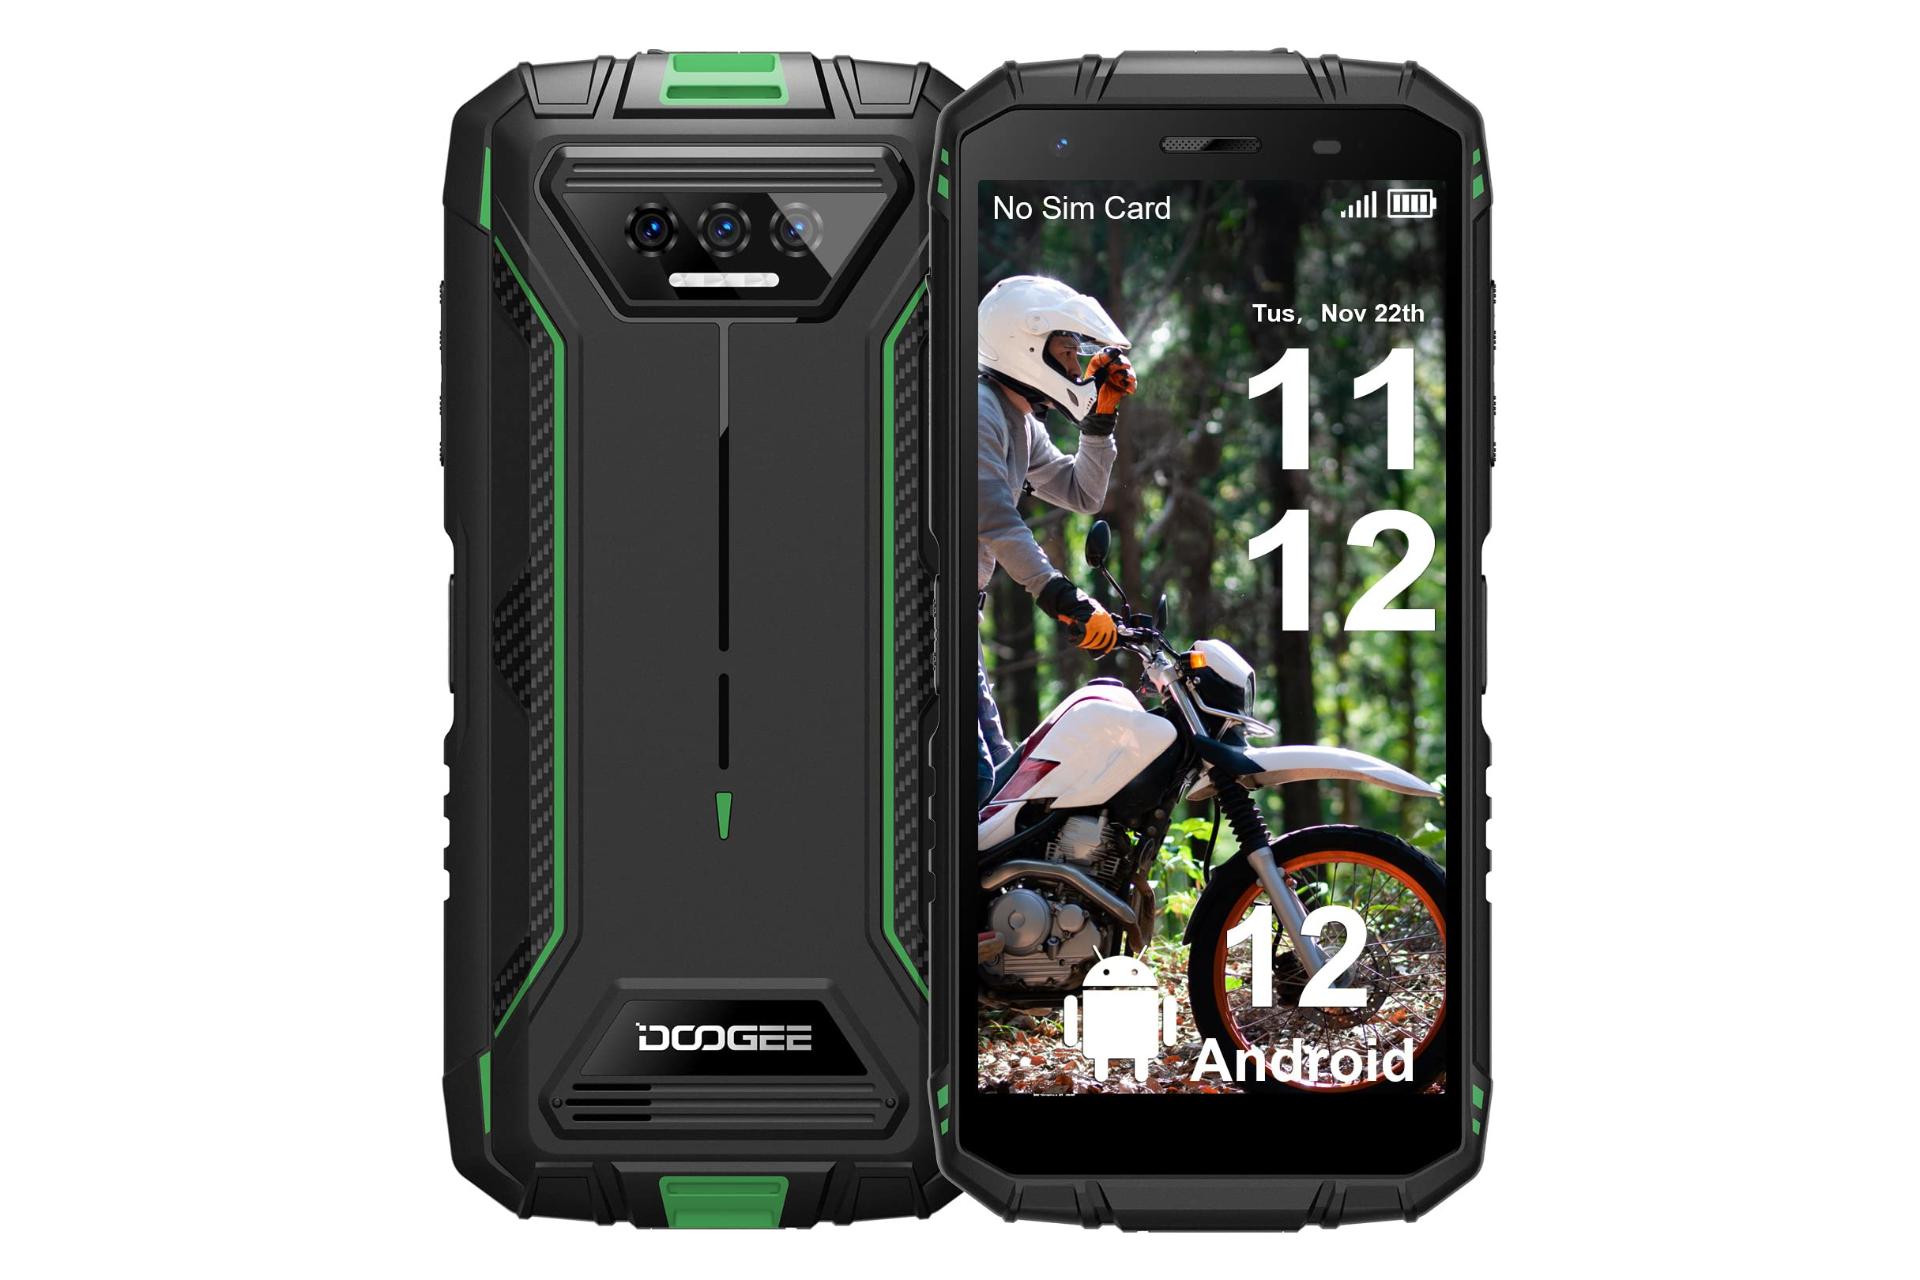 گوشی موبایل S41 پرو دوجی / Doogee S41 Pro سبز